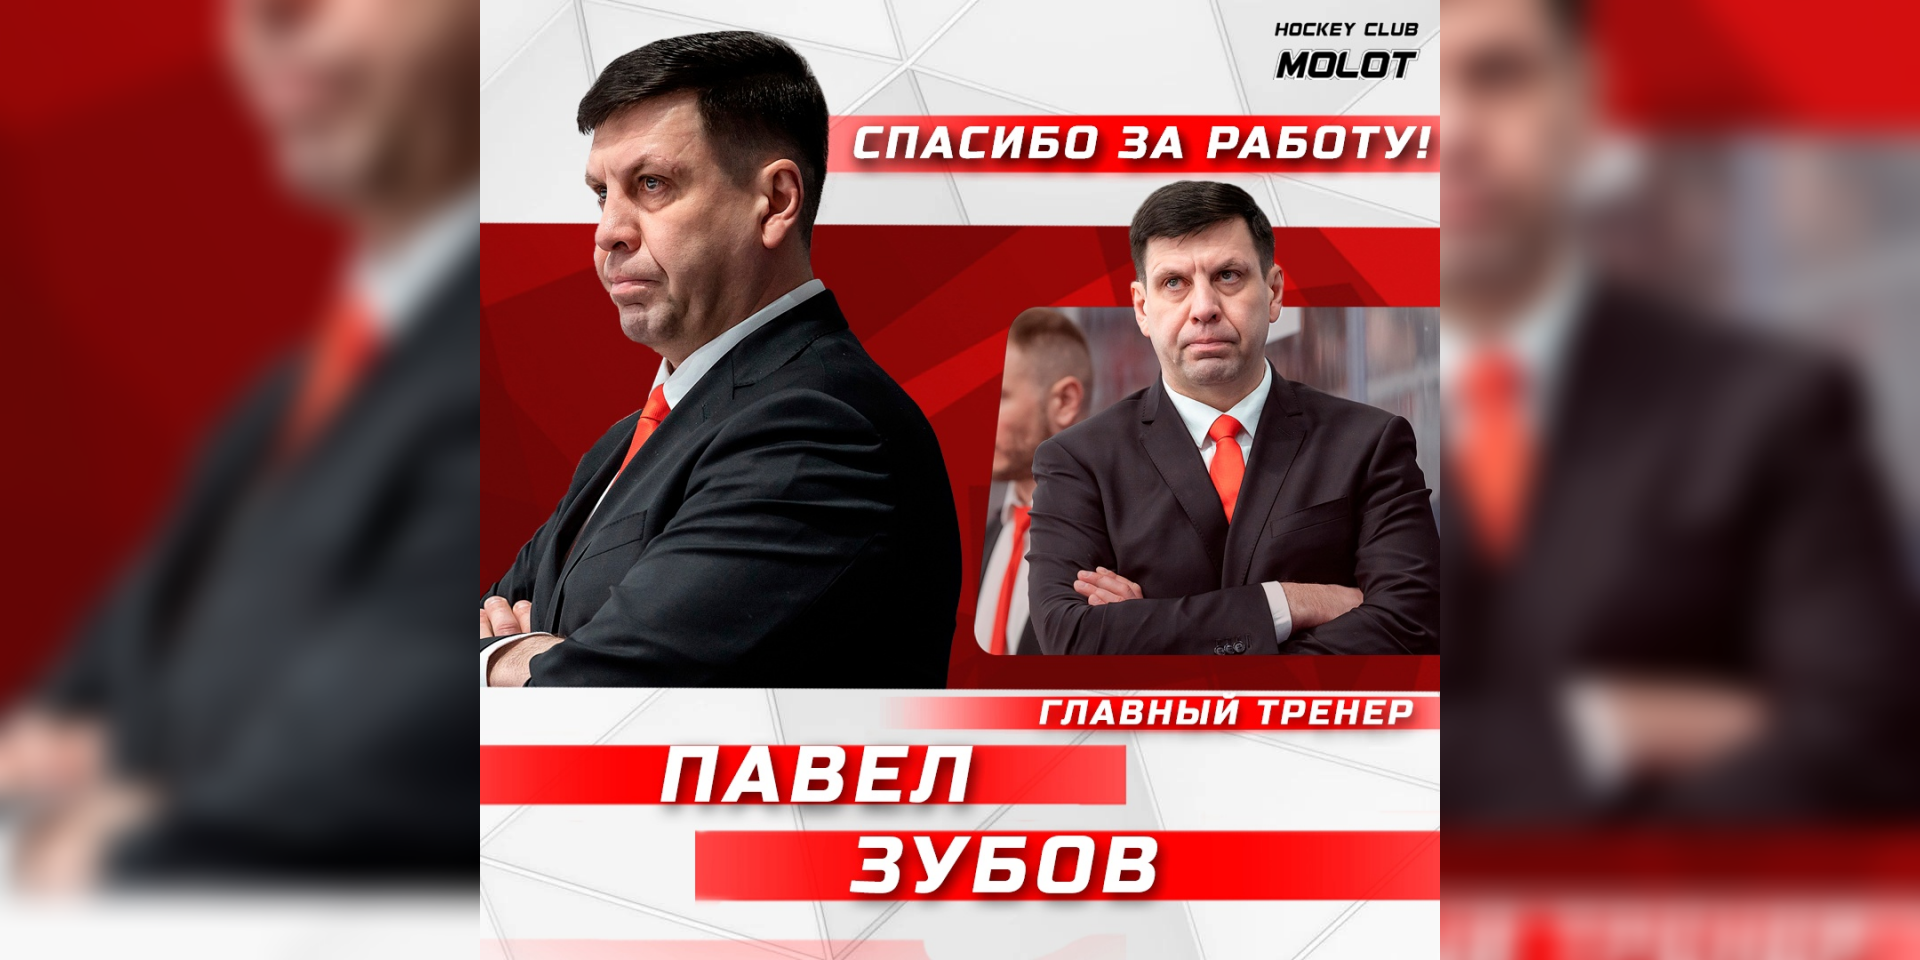 В пермском хоккейном клубе «Молот» сменится главный тренер 